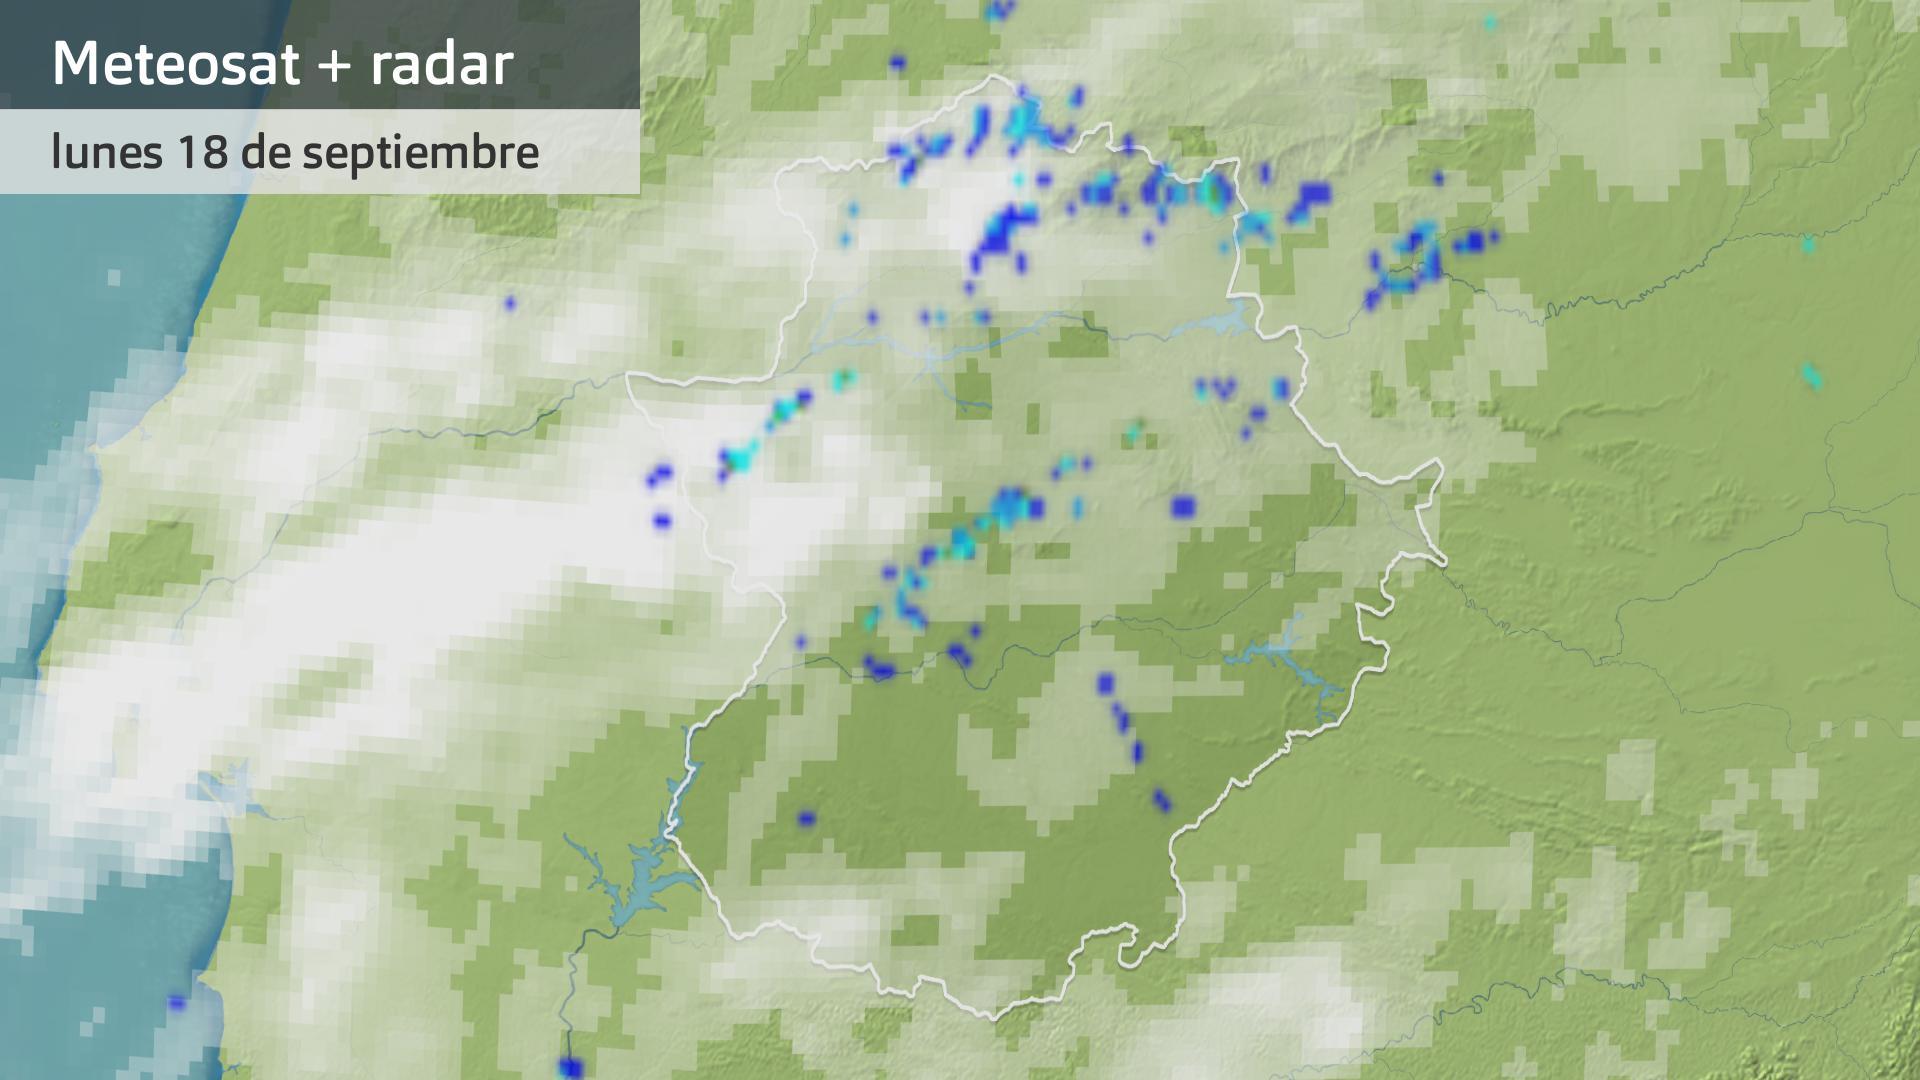 Imagen del Meteosat + radar meteorológico lunes 18 de septiembre 5:30 h.